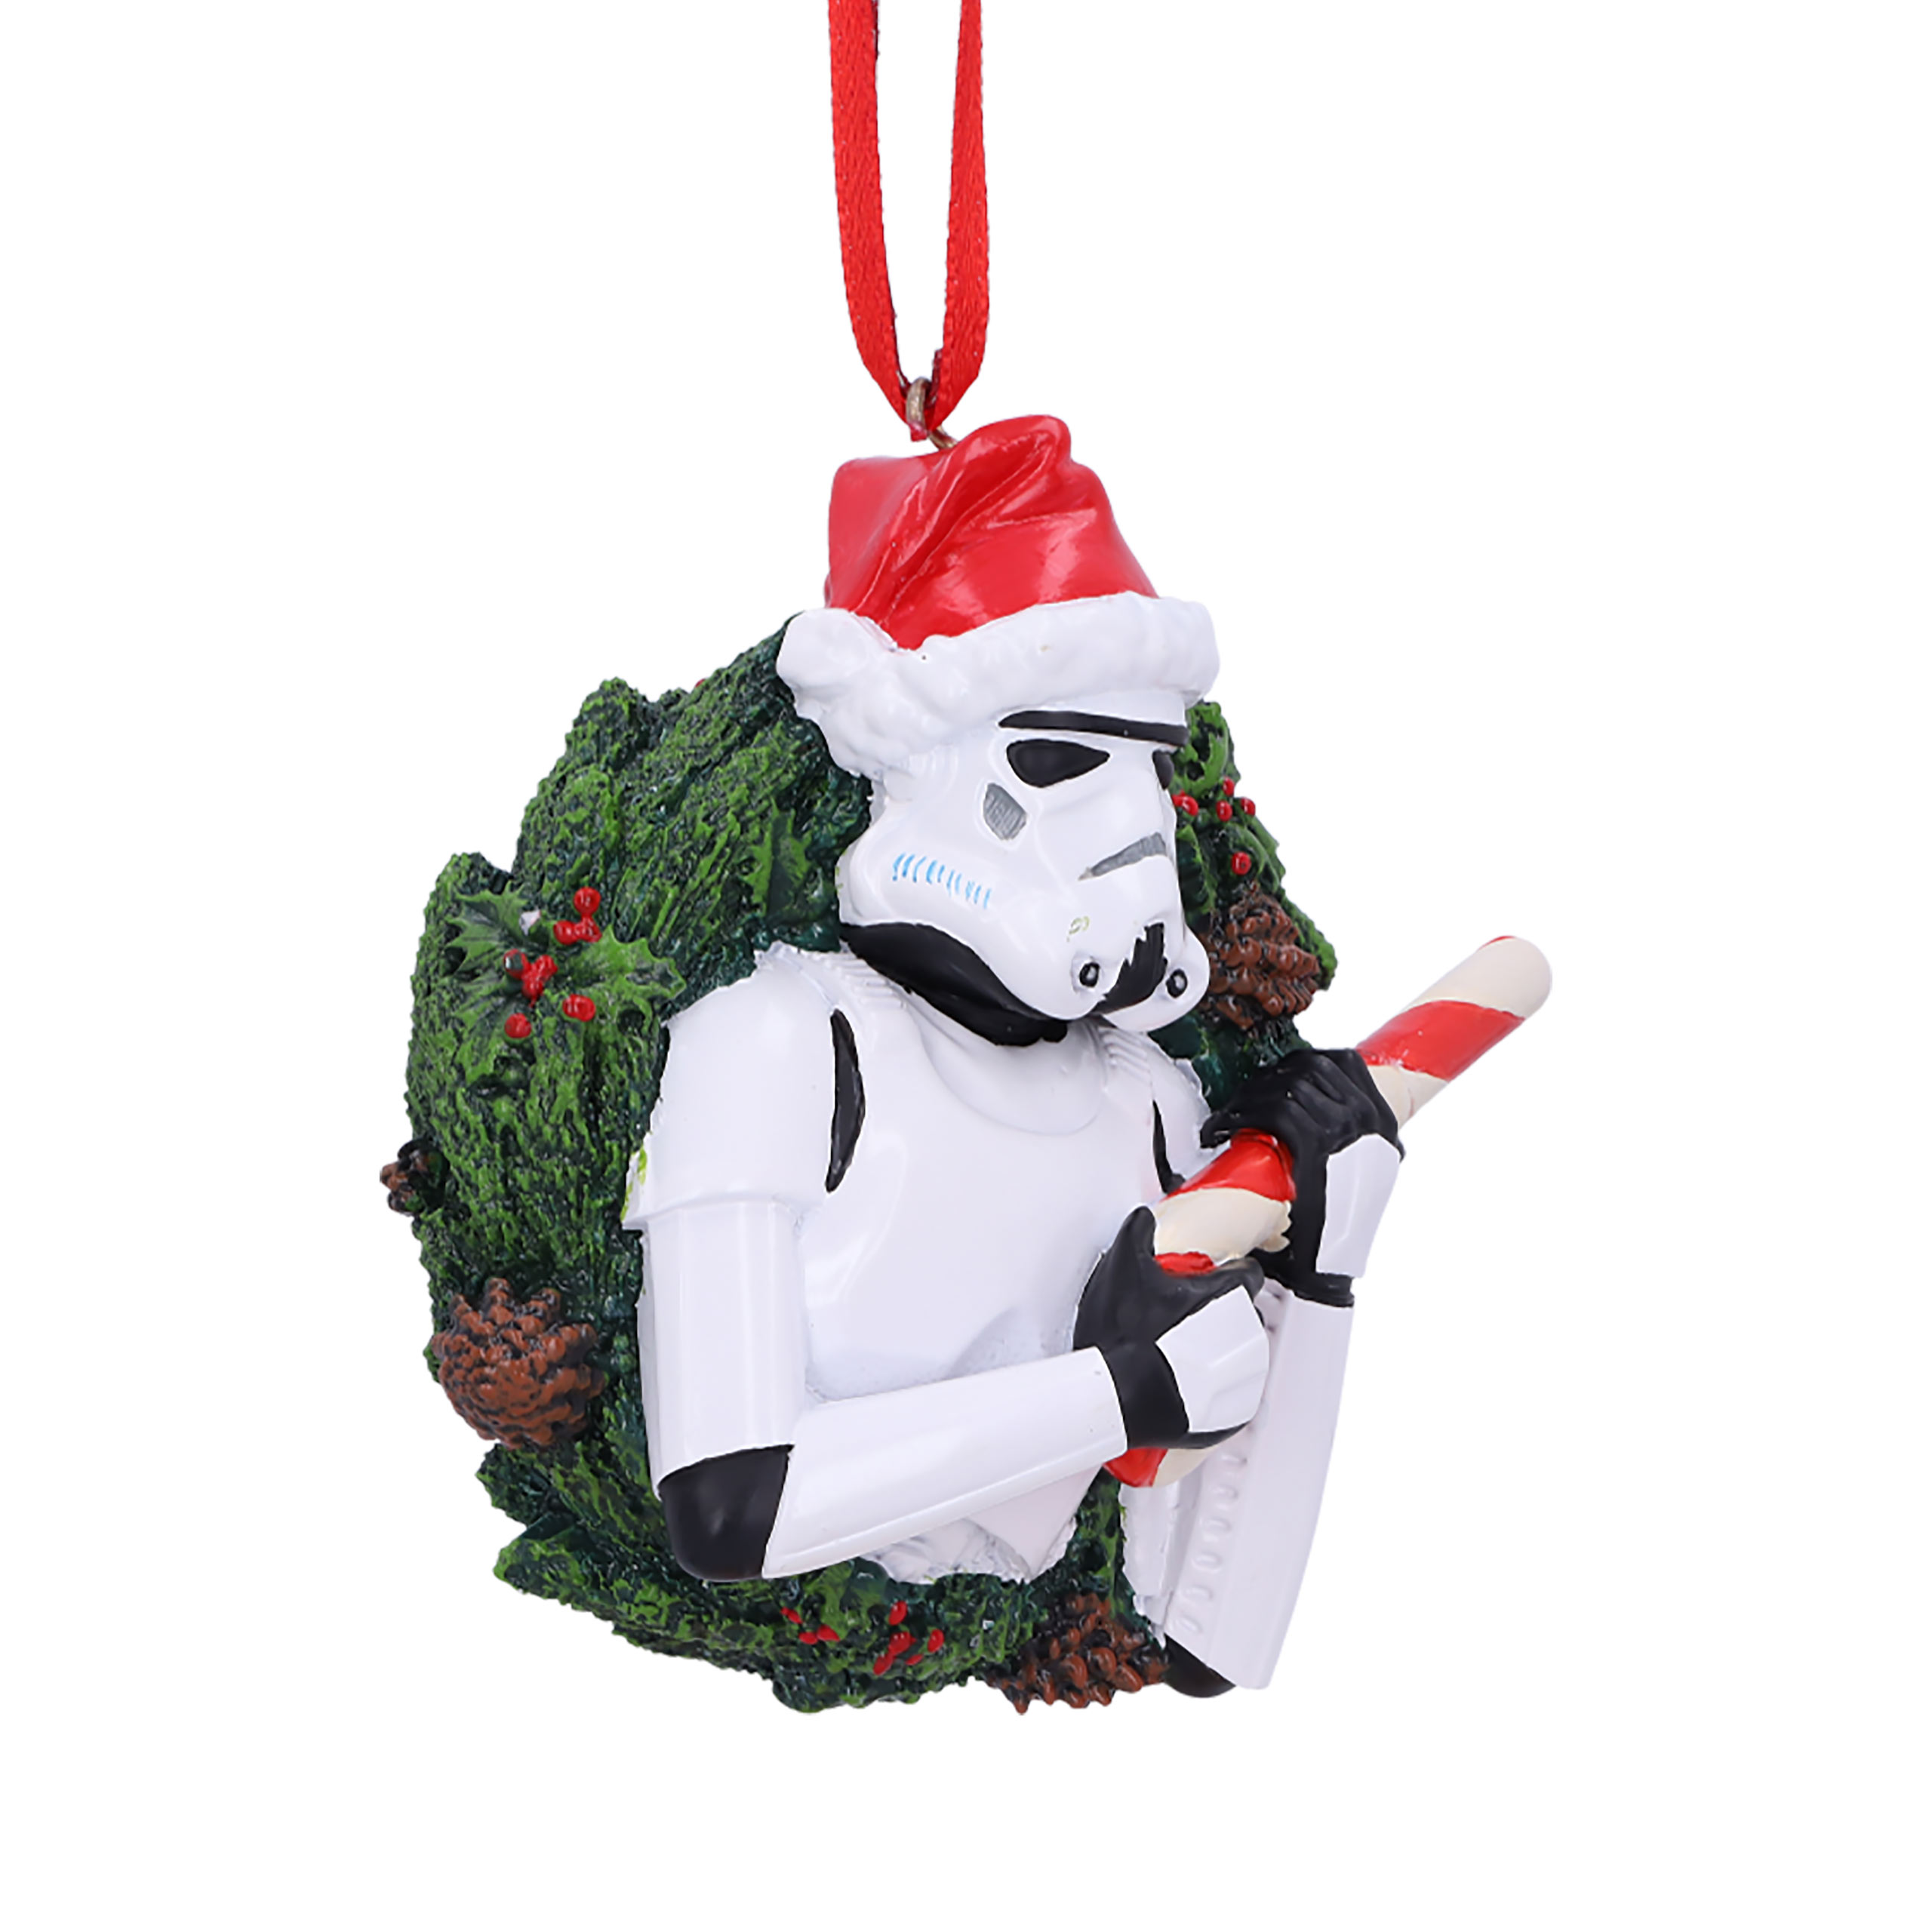 Stormtrooper Weihnachtskranz Weihnachtsbaum-Schmuck - Star Wars